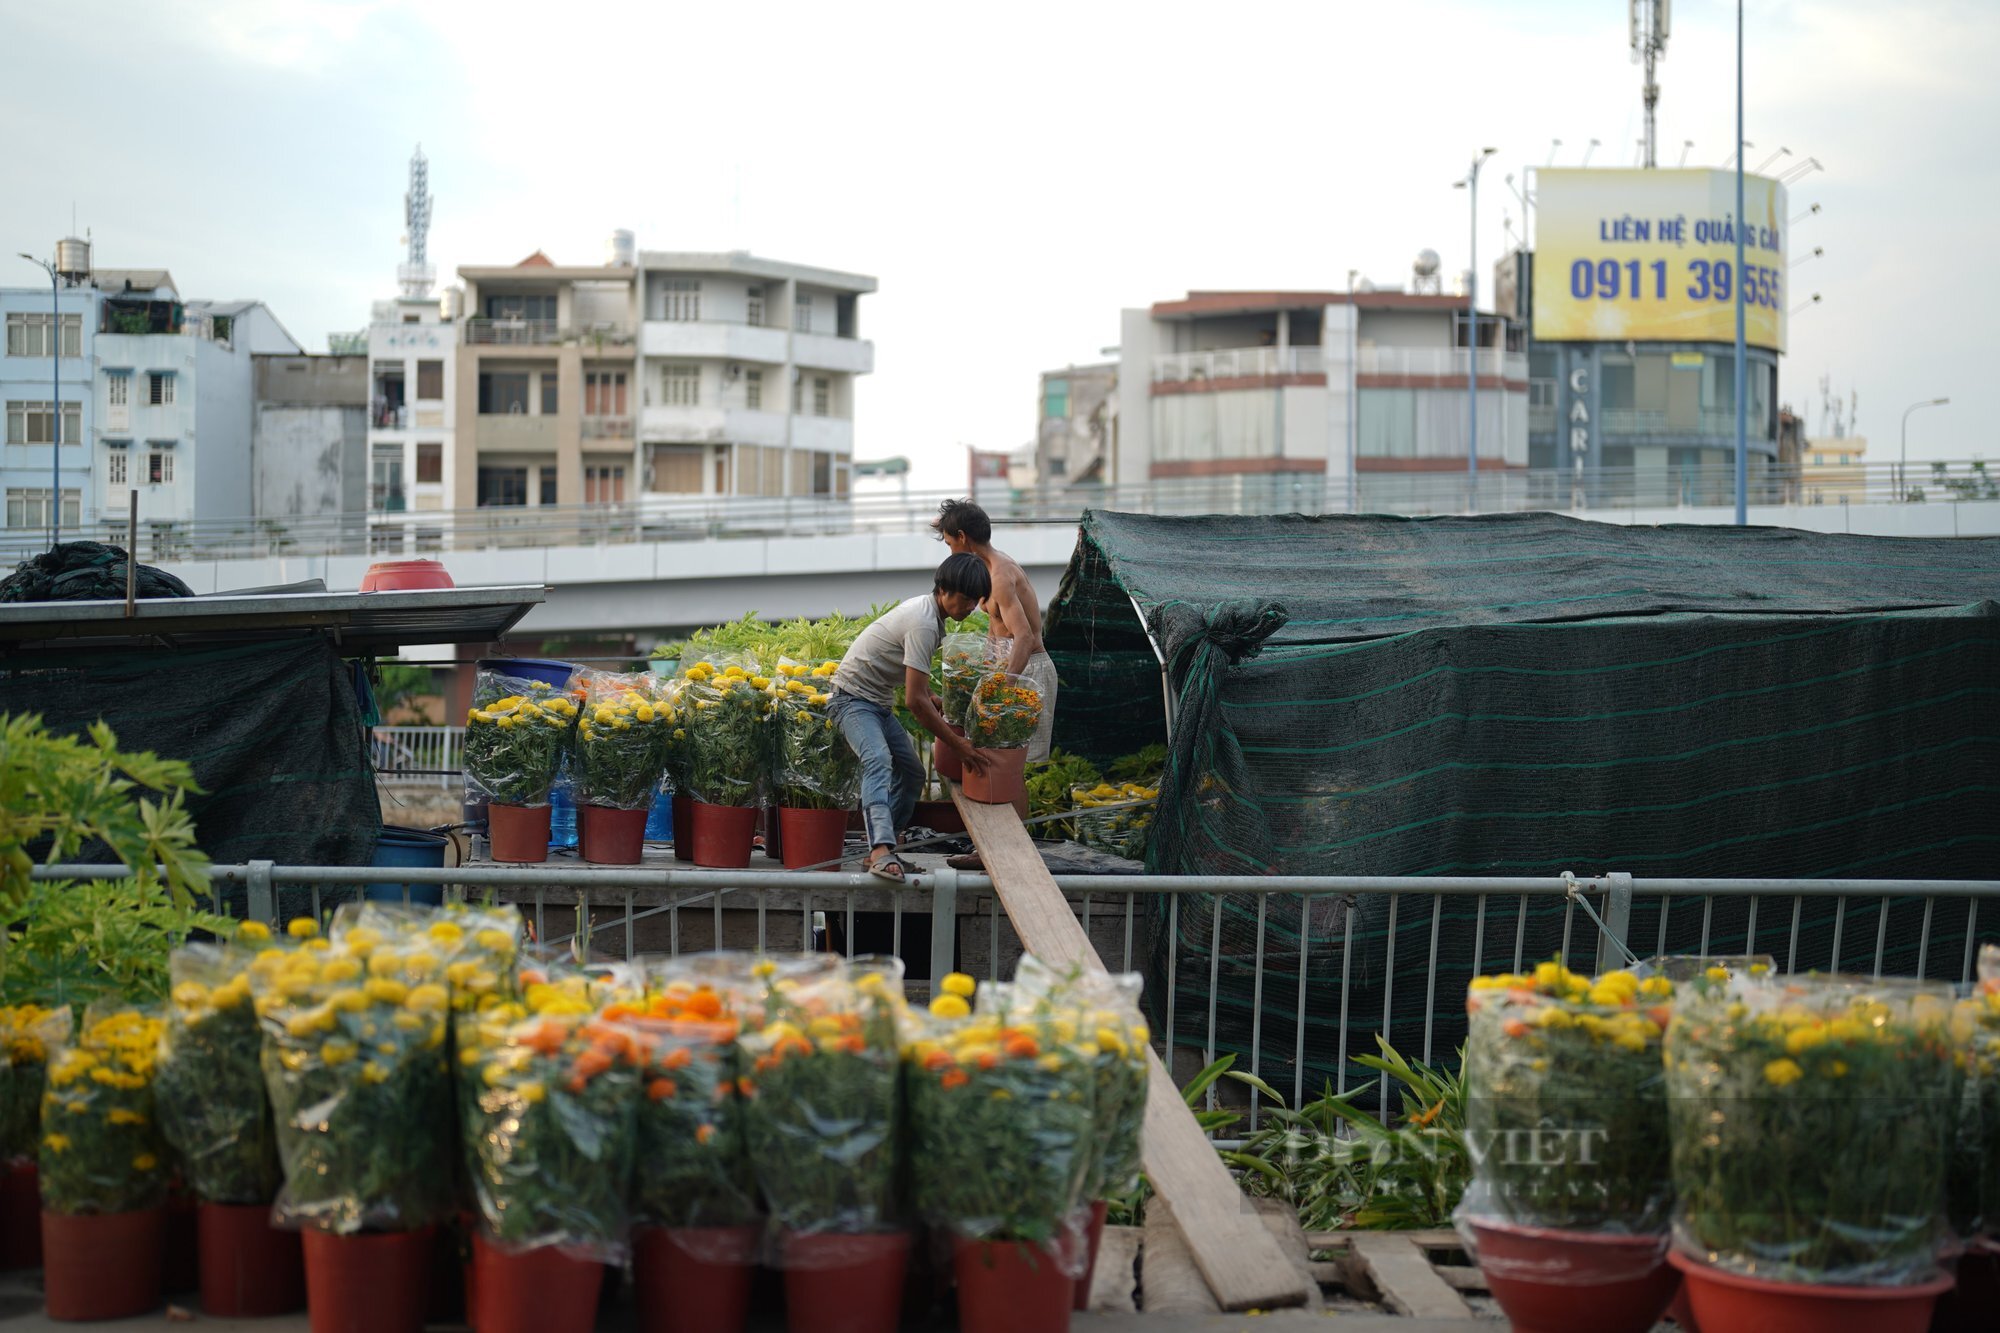 Chợ hoa xuân "Trên bến dưới thuyền" năm nay kéo dài nửa tháng- Ảnh 3.